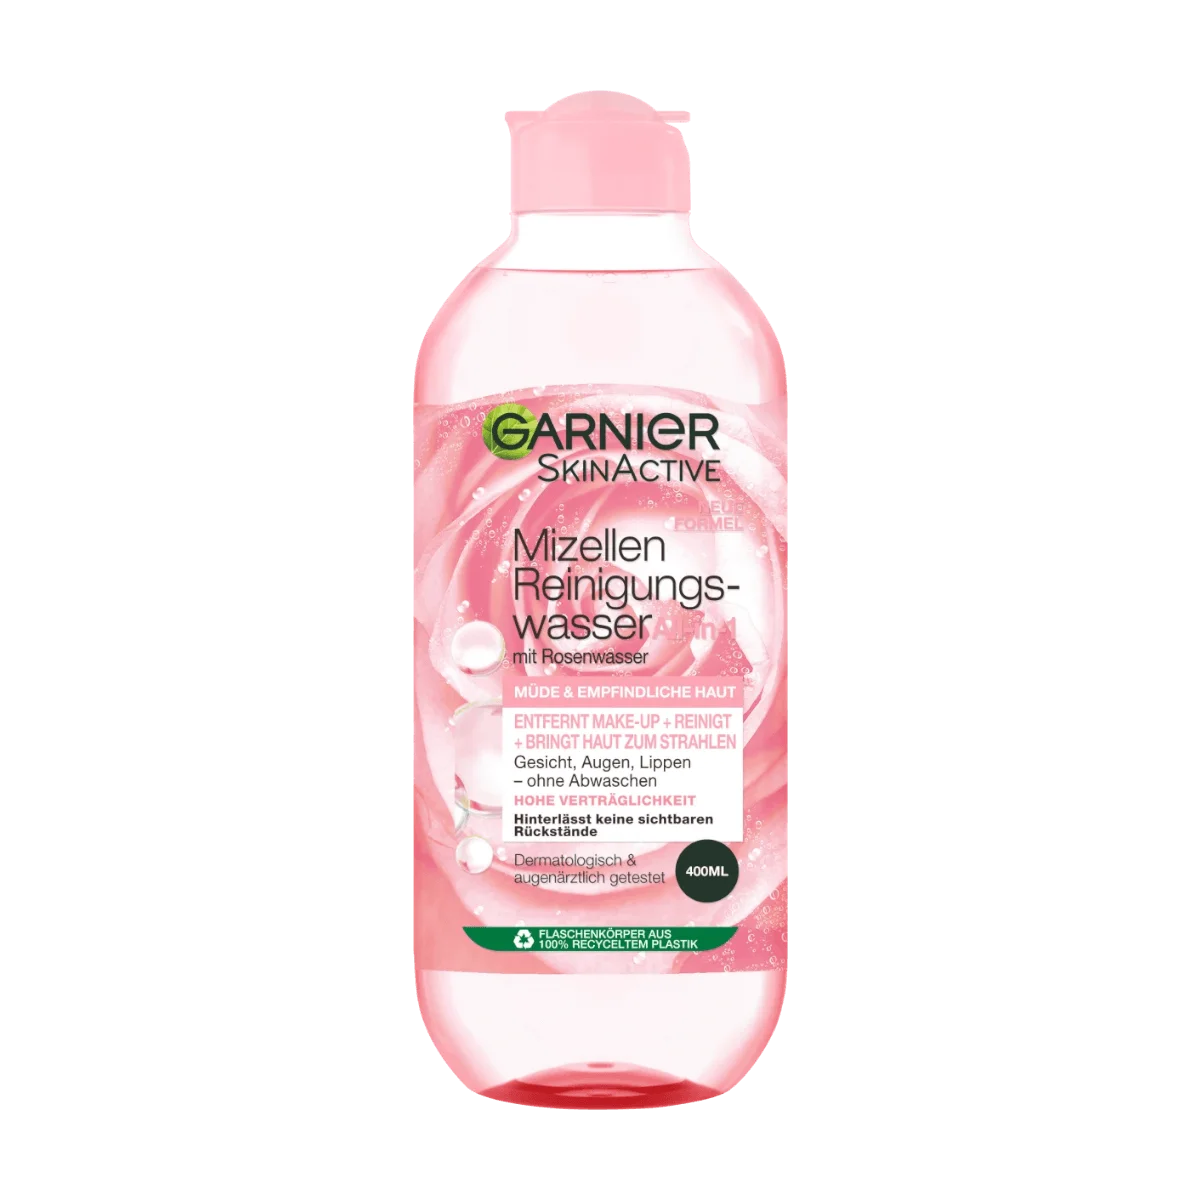 Garnier SkinActive Rosenwasser + Allin1 Reinigungswasser